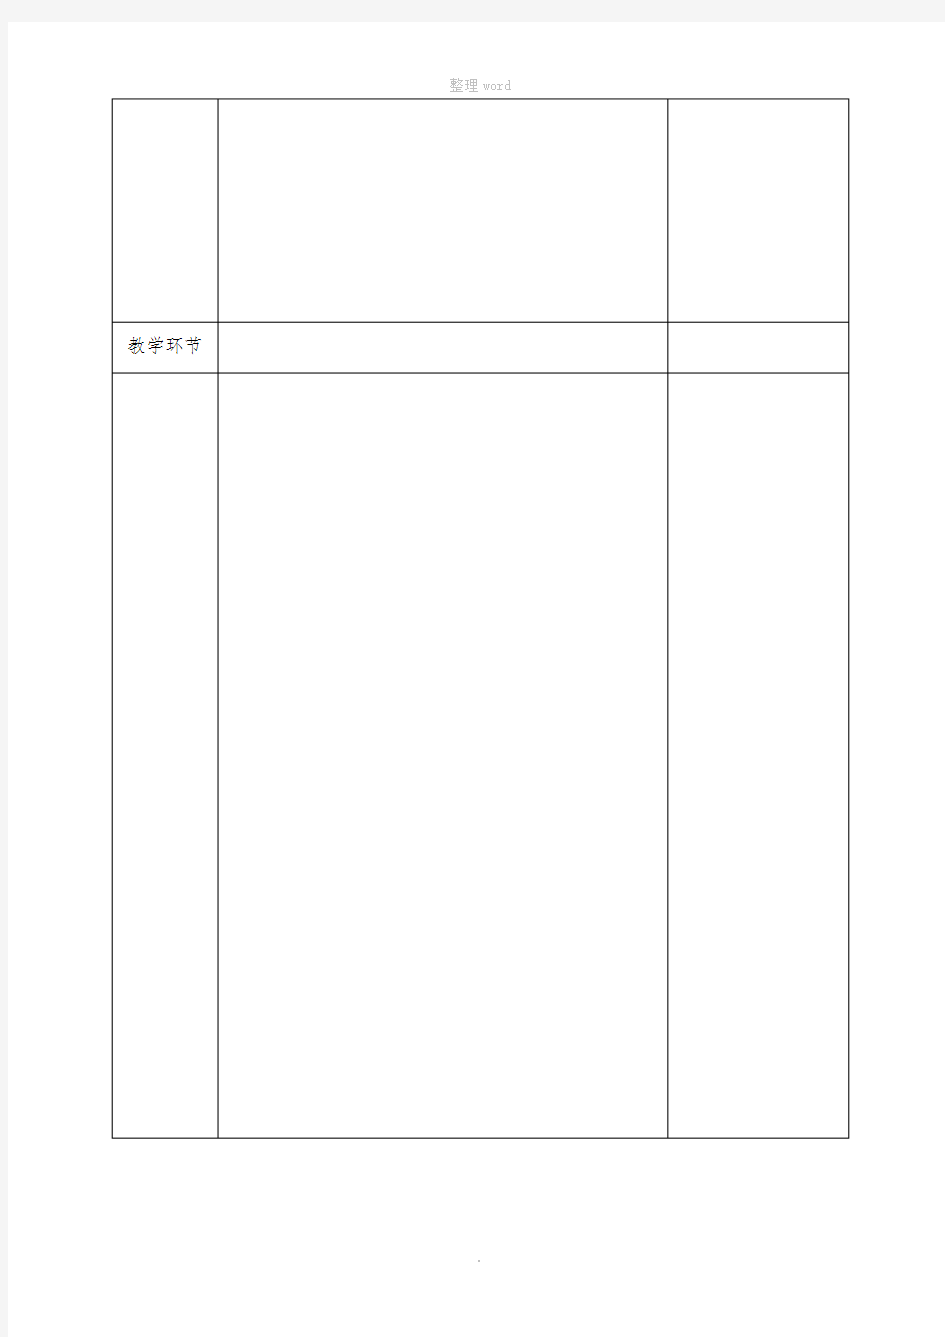 教学设计版本(空白表格)